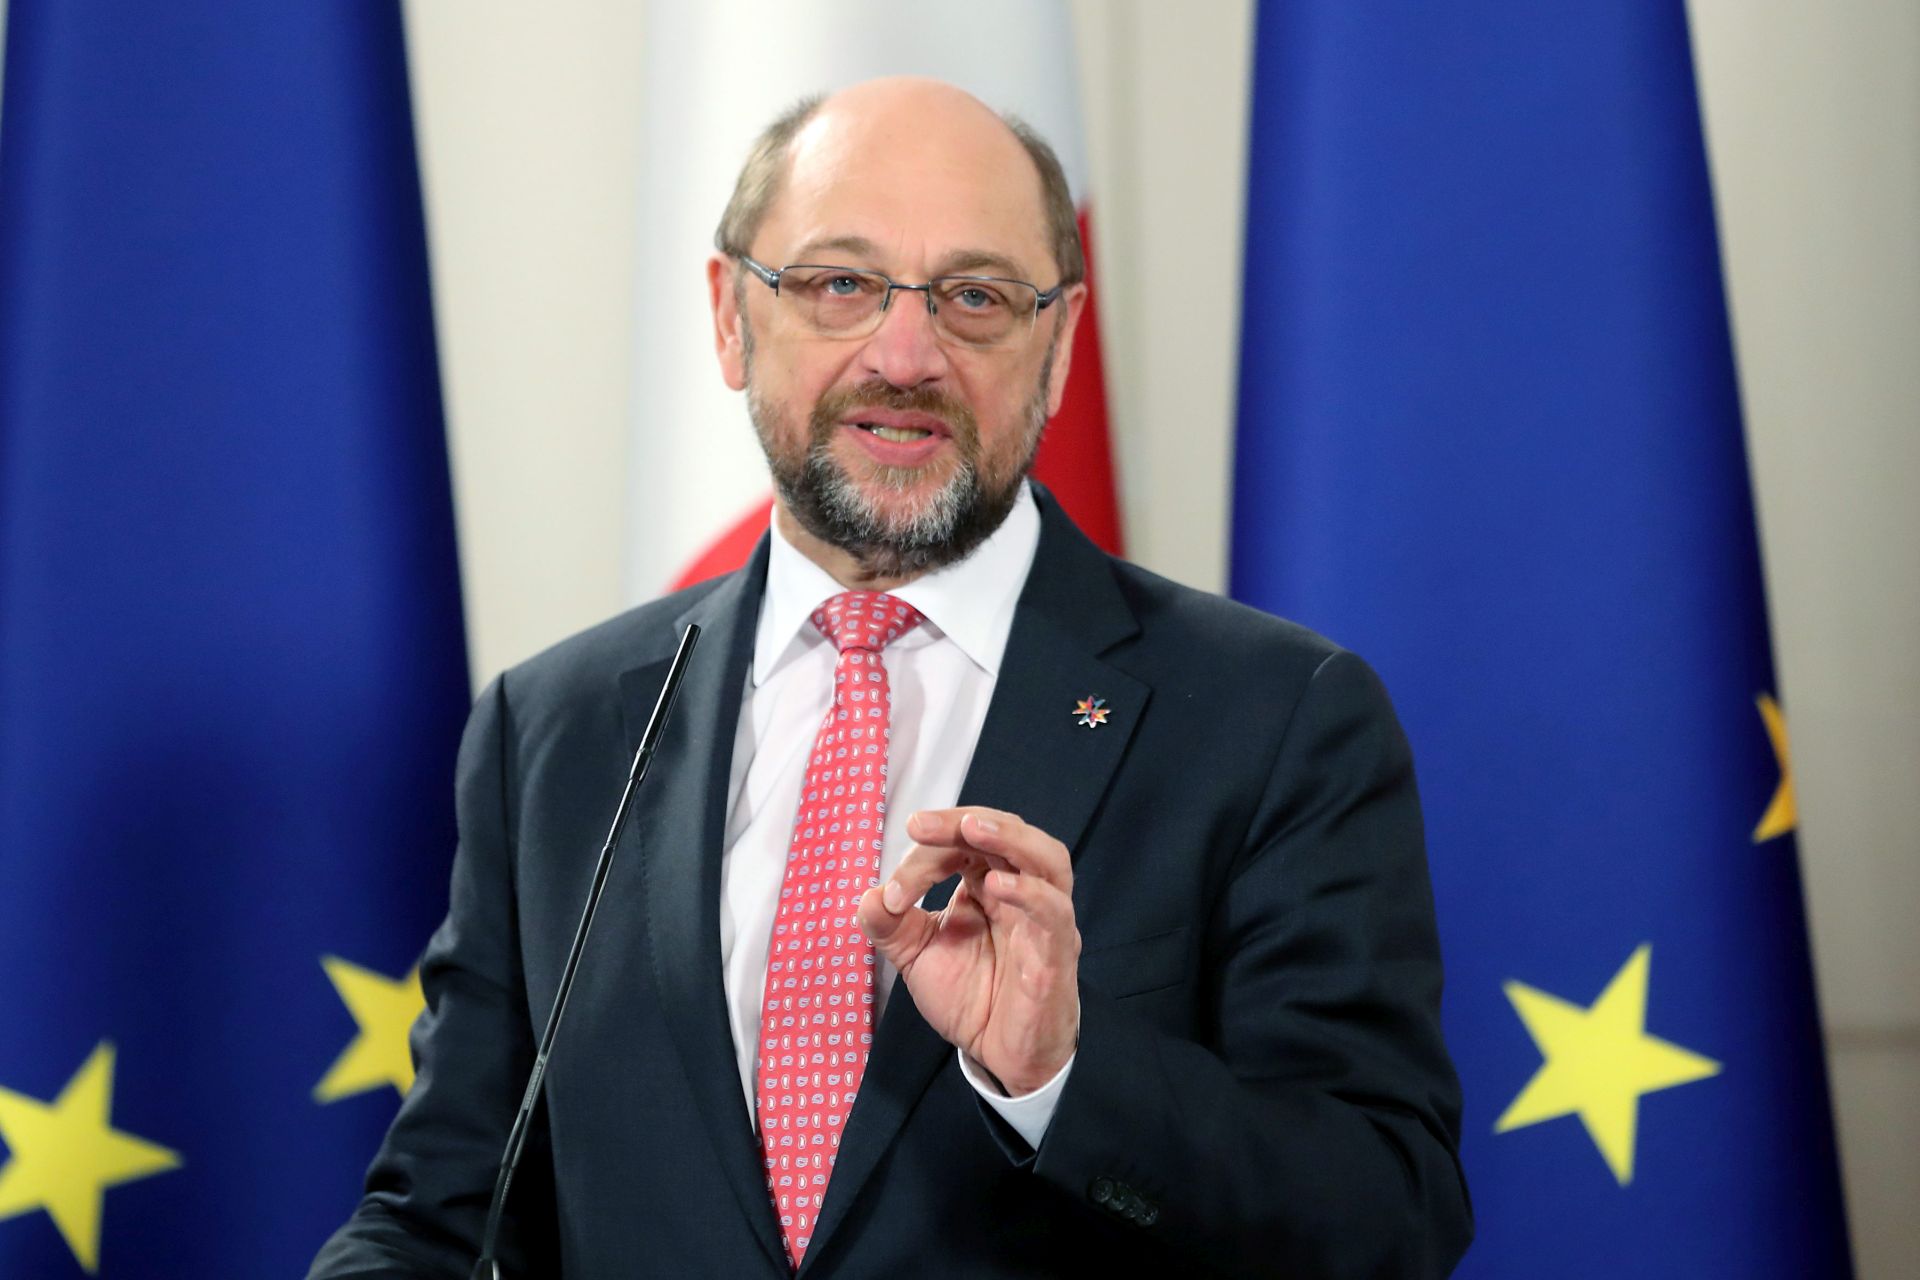 PARLAMENTARNI IZBORI: Schulz socijaldemokratski kandidat za njemačkog kancelara